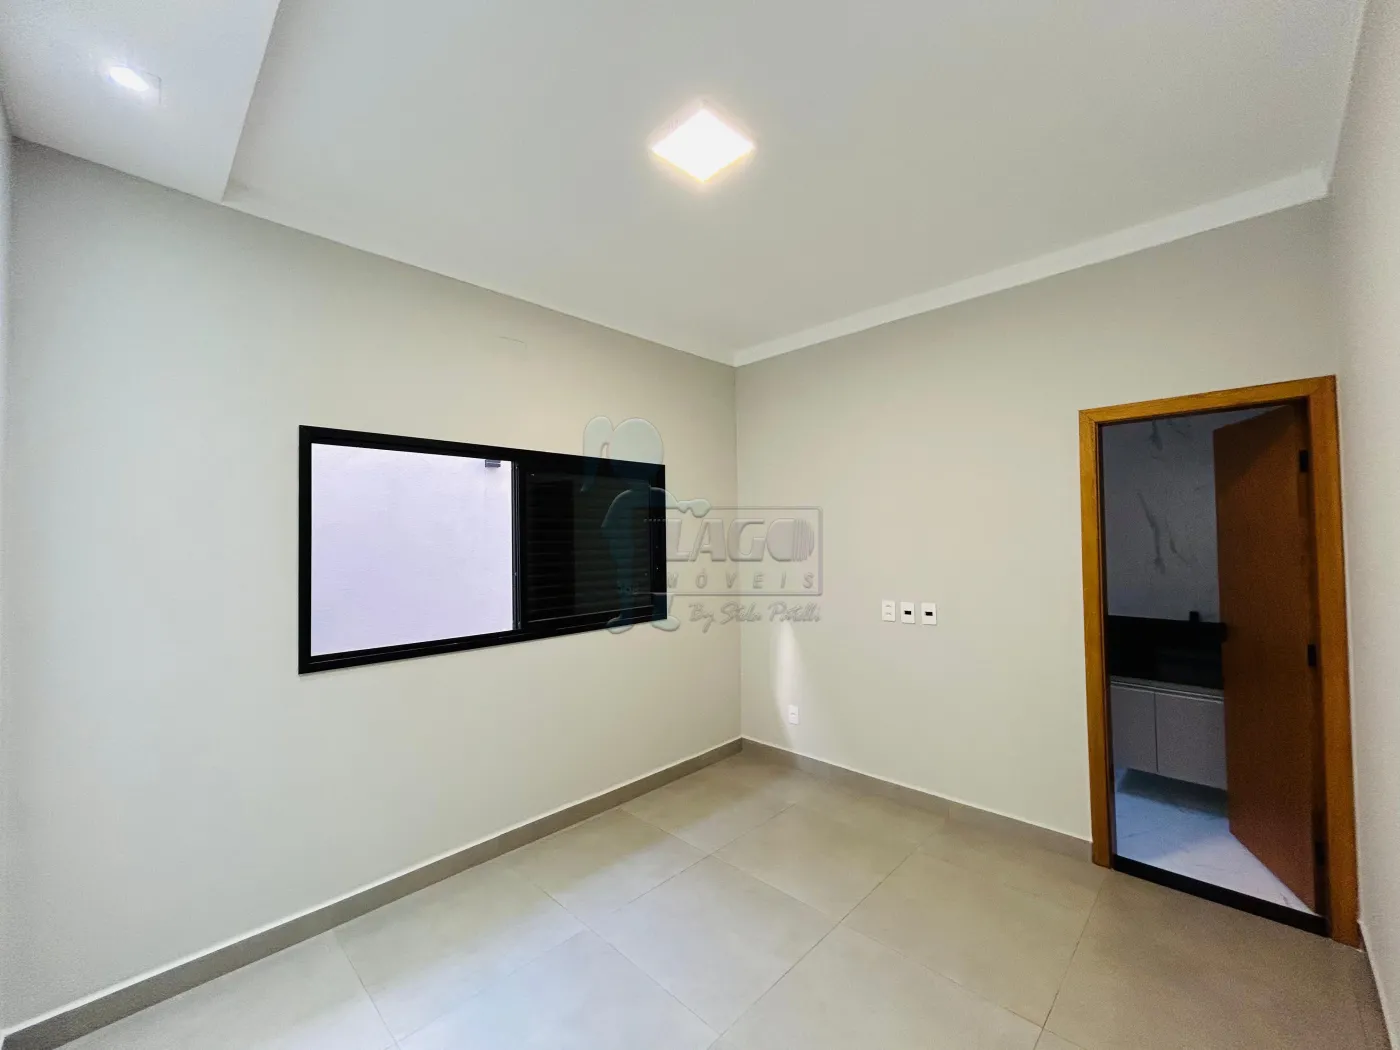 Comprar Casa condomínio / Padrão em Bonfim Paulista R$ 935.000,00 - Foto 15